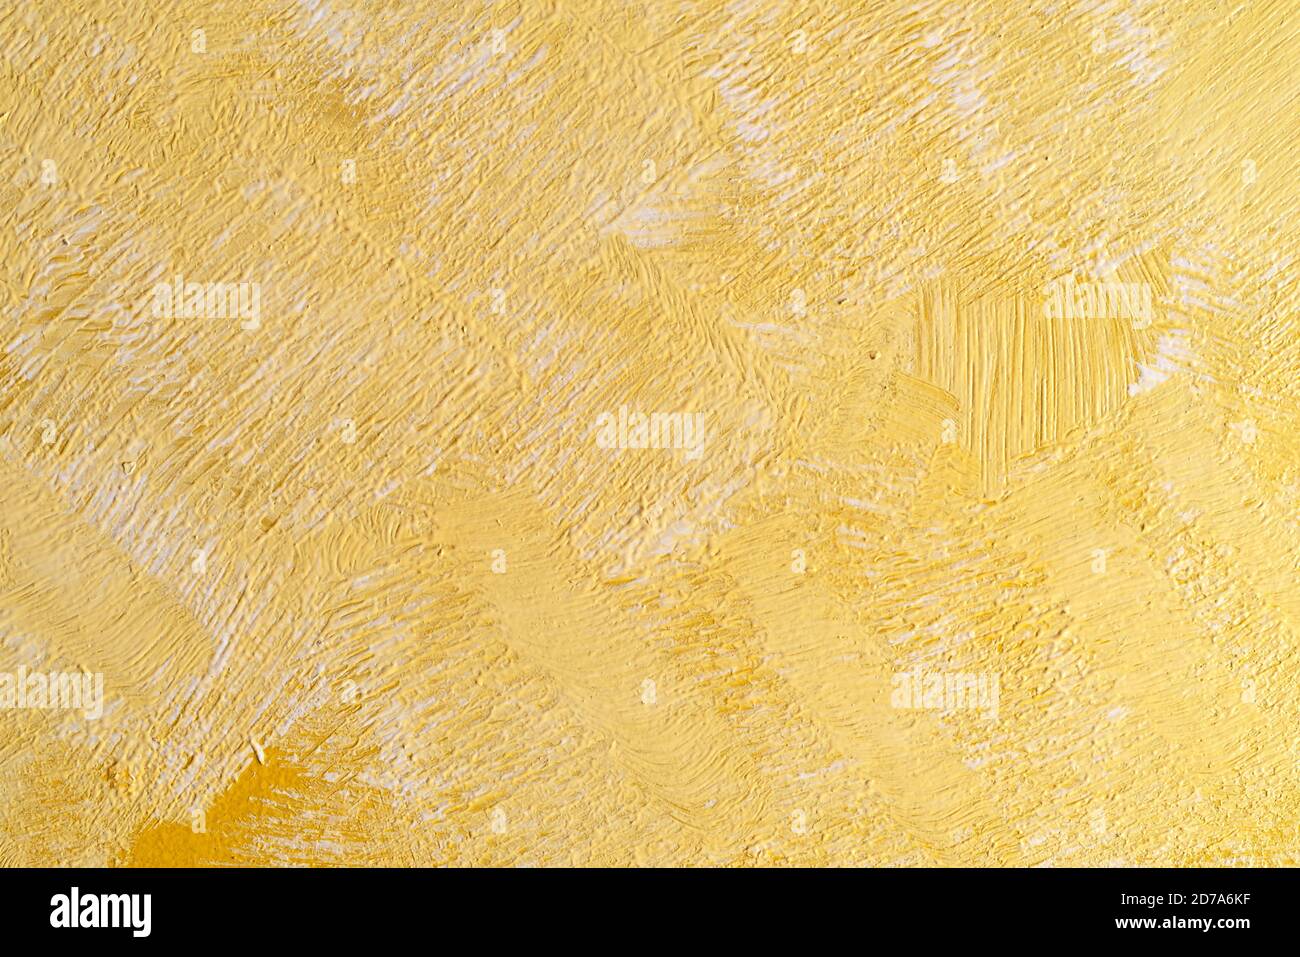 Vue rapprochée d'un arrière-plan peint en blanc et en jaune montrant des traits de pinceau irréguliers. Banque D'Images